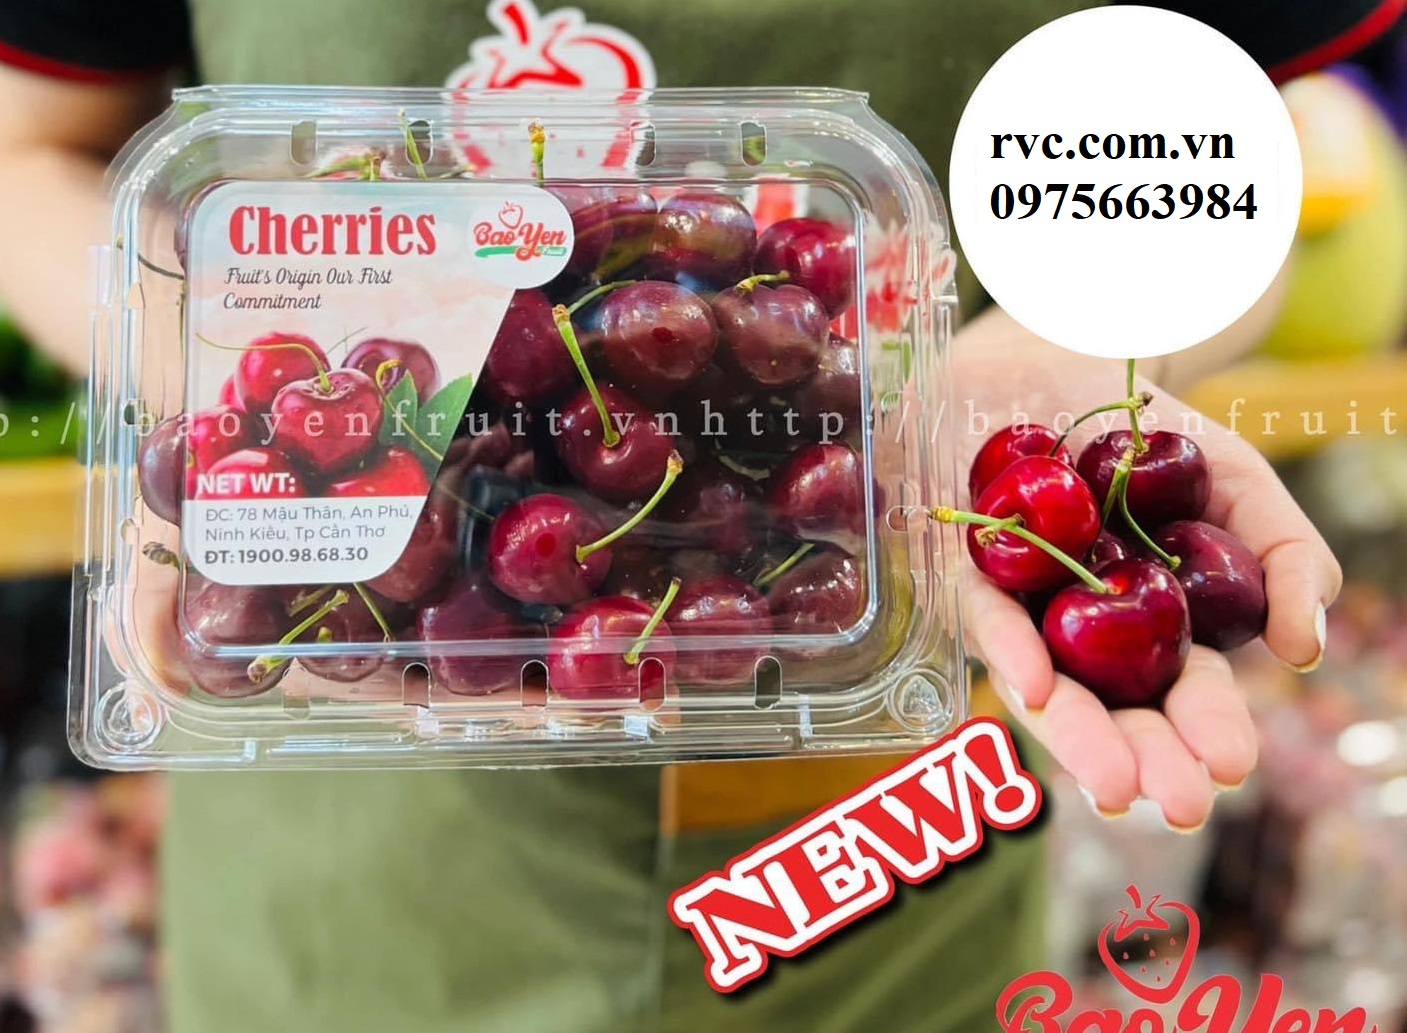 Điểm phân phối hộp nhựa đựng cherry uy tín, chất lượng tại Sài Gòn